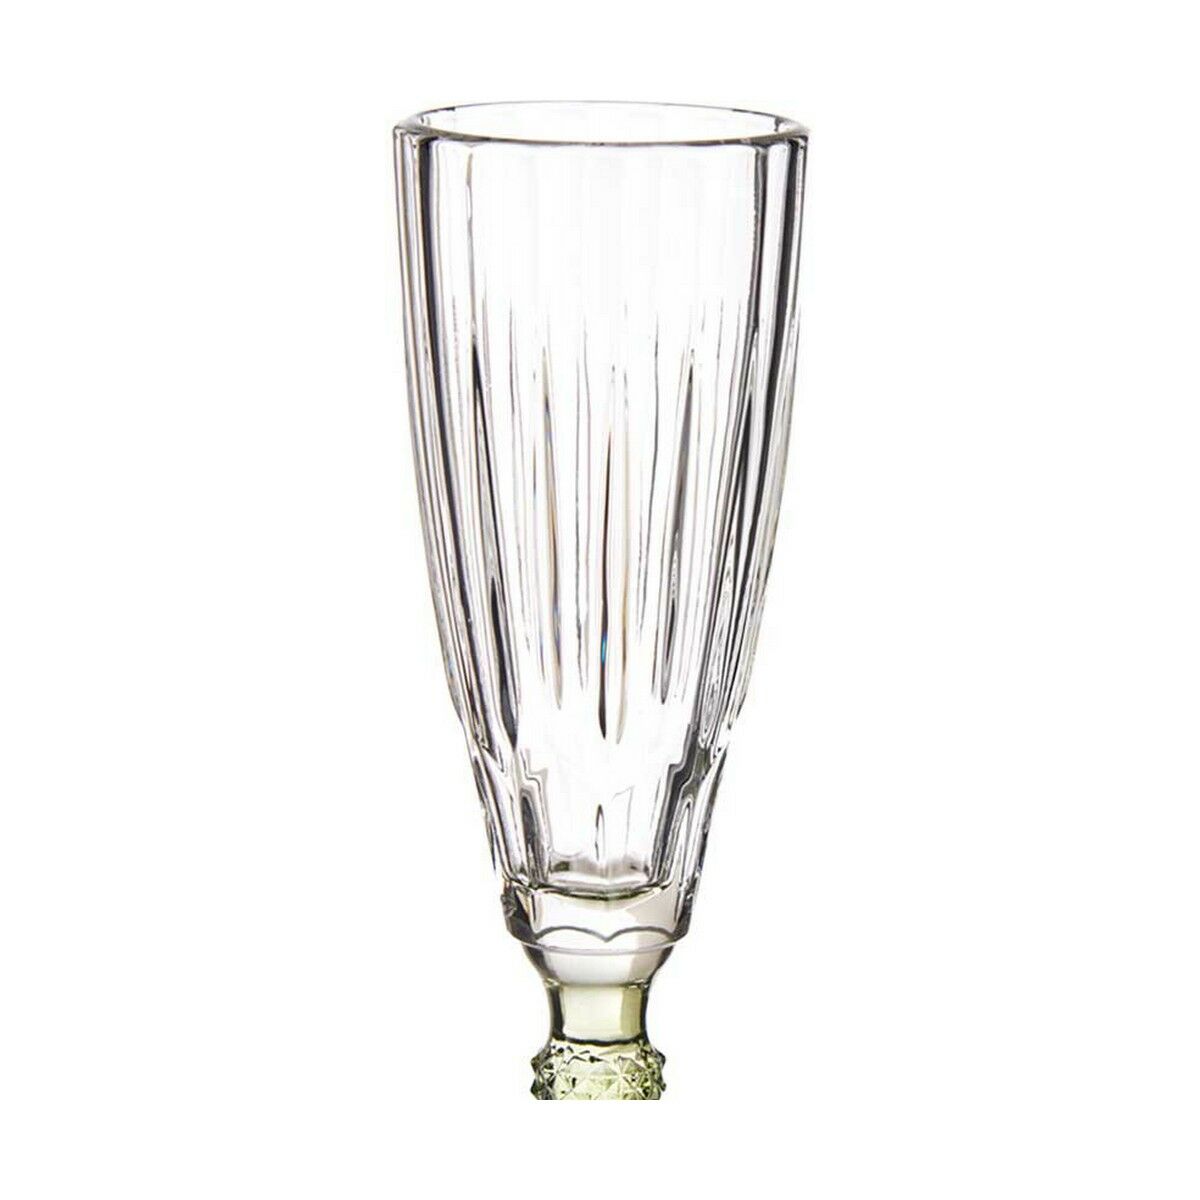 Champagnerglas Kristall 170 ml (Restauriert A)